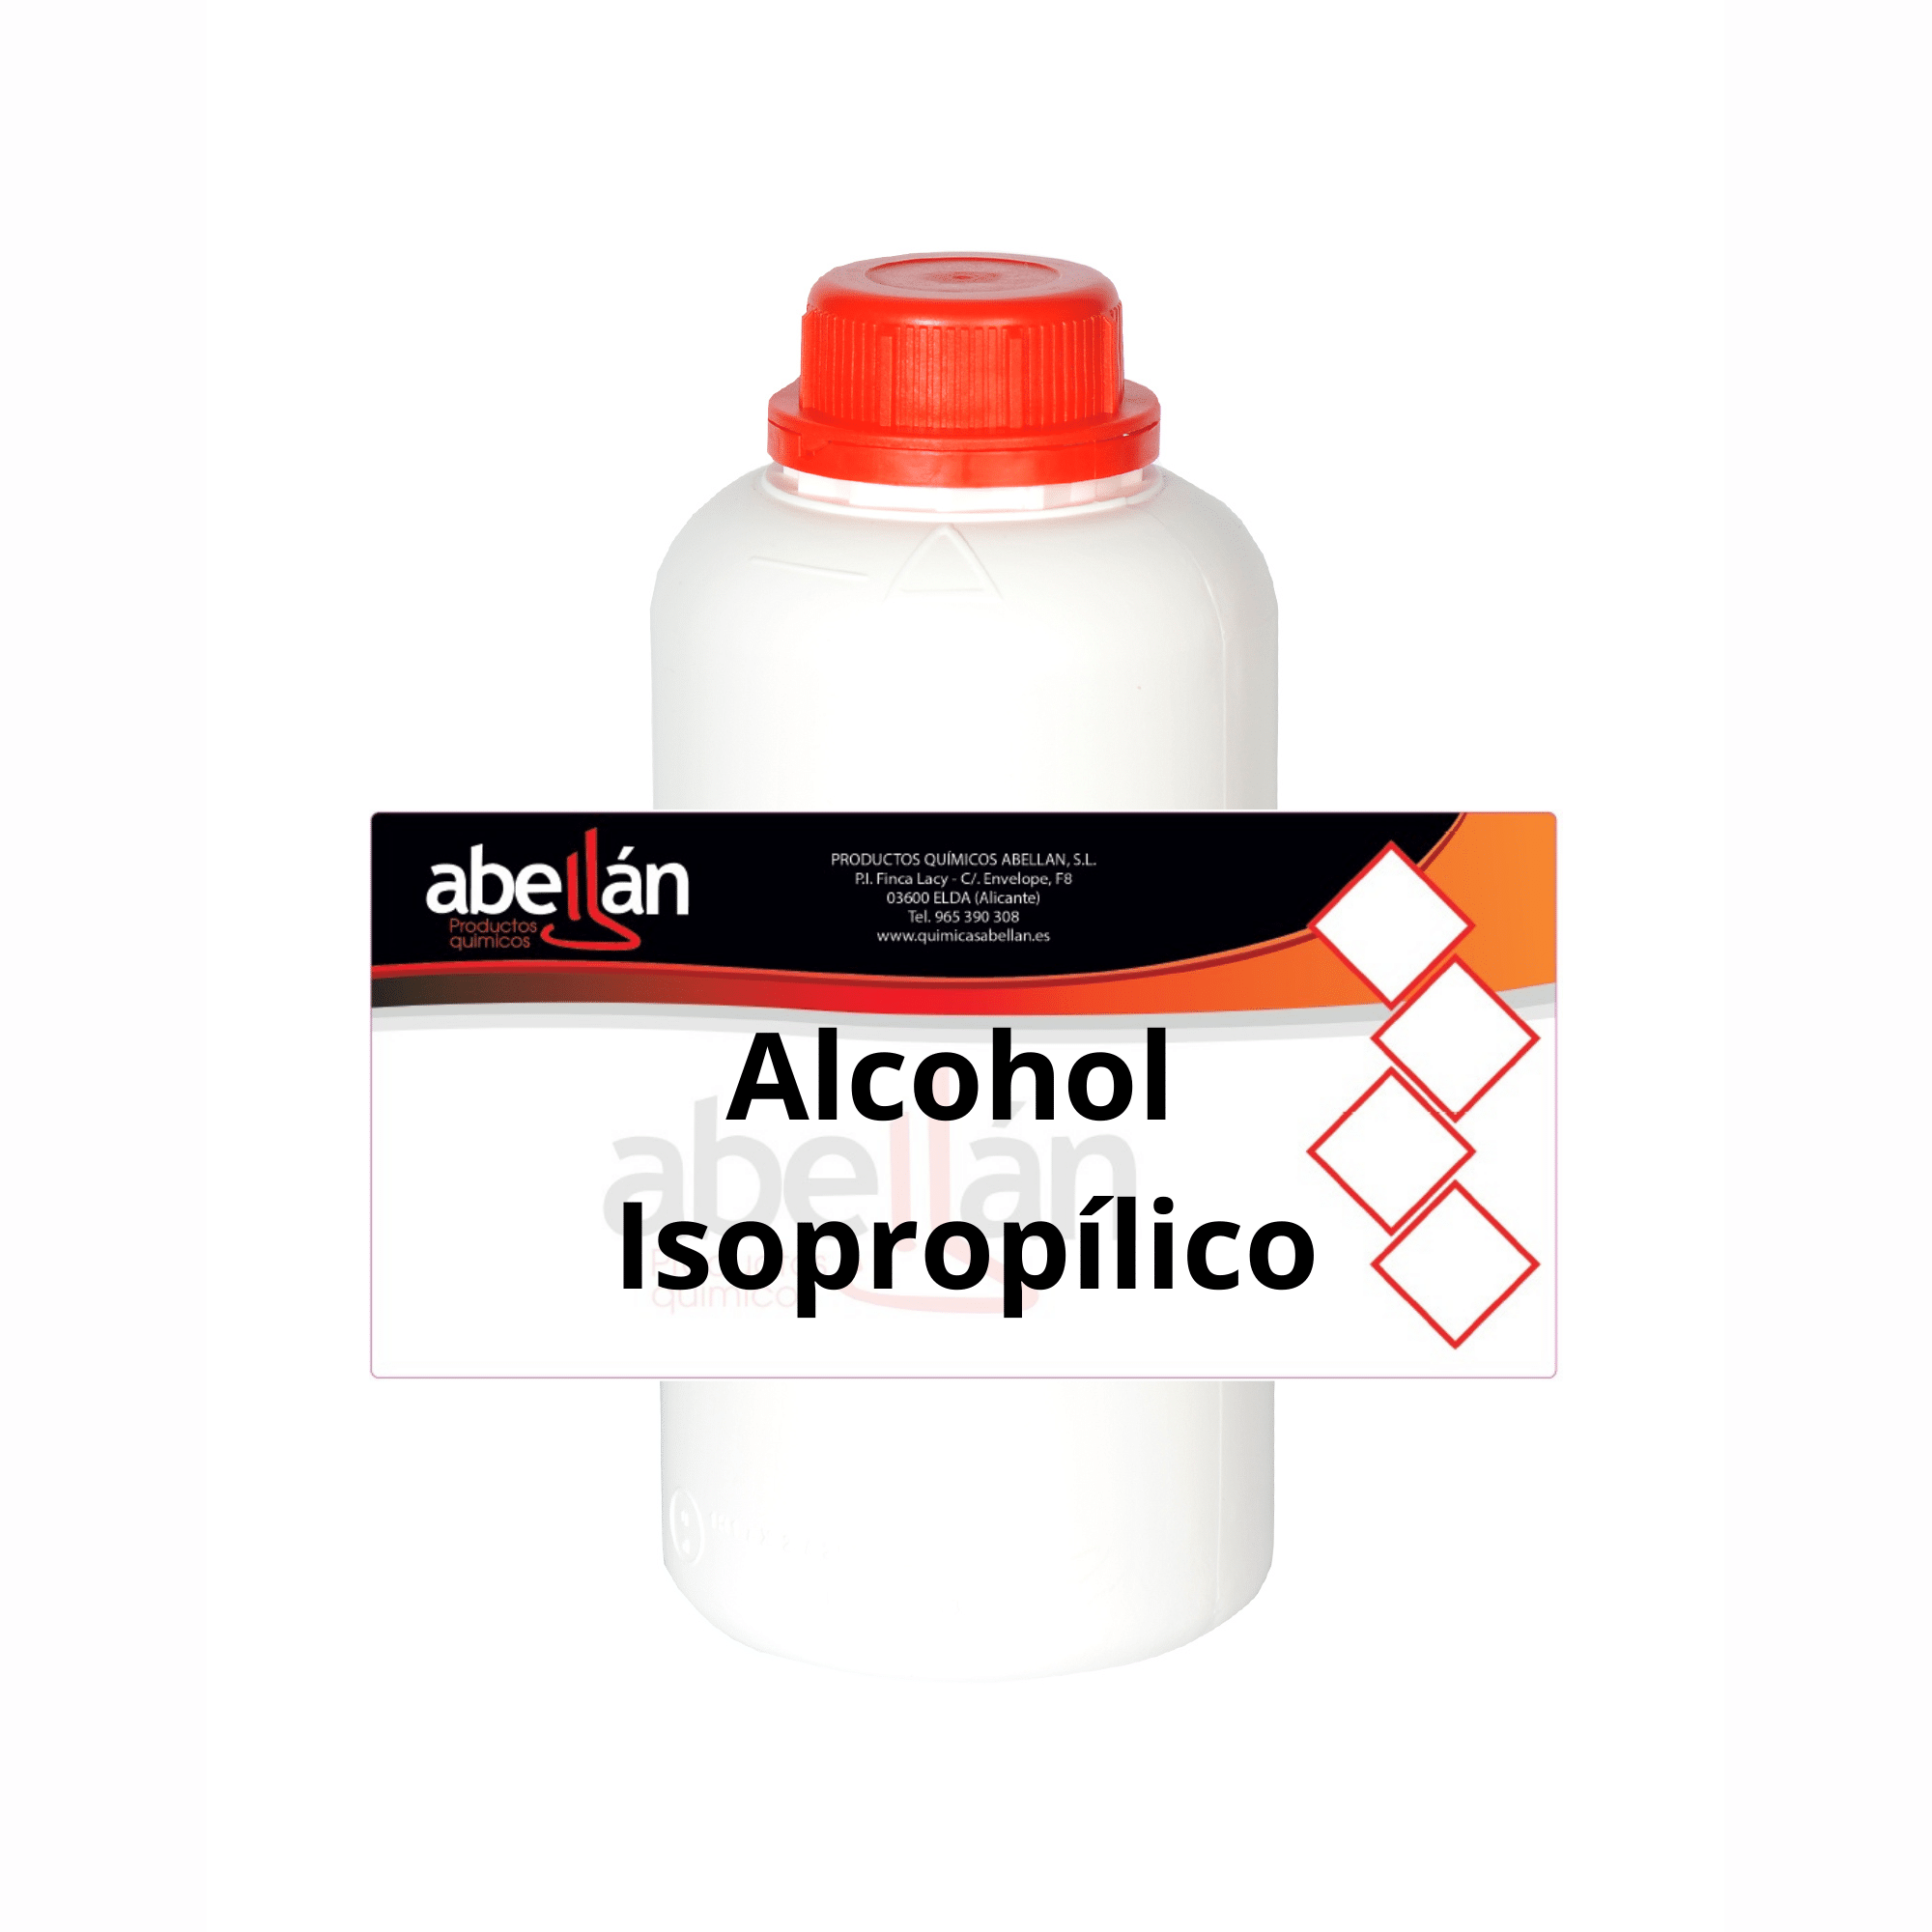 Todo sobre el Alcohol Isopropílico